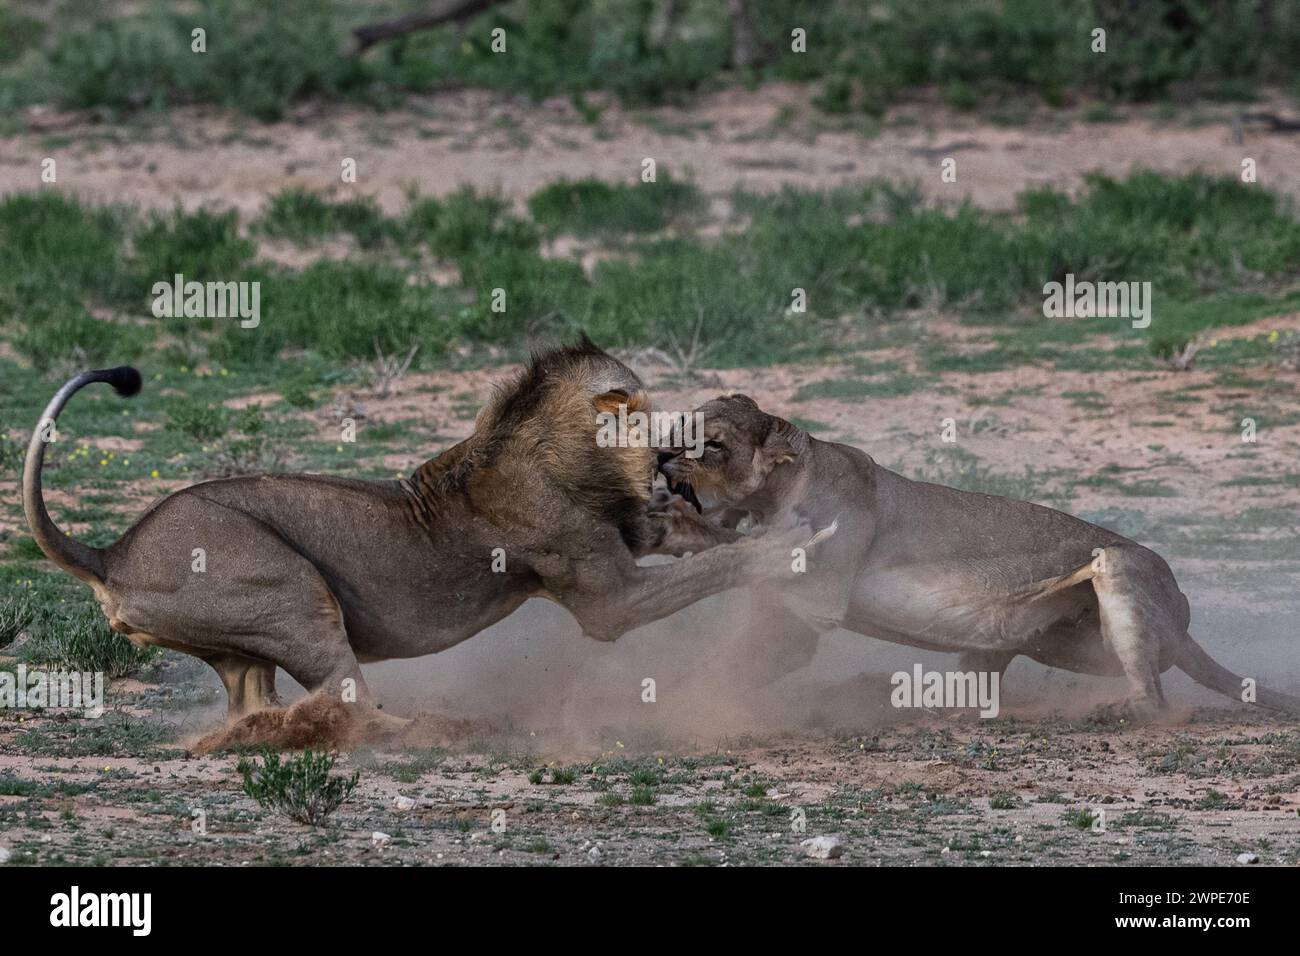 Die Mutter versucht ihr Bestes, den Löwen von ihren Jungen fernzuhalten AFRIKA HERZZERREISSENDE Bilder zeigen den Kampf einer trotzigen Mutter Löwin, um sie zu beschützen Stockfoto